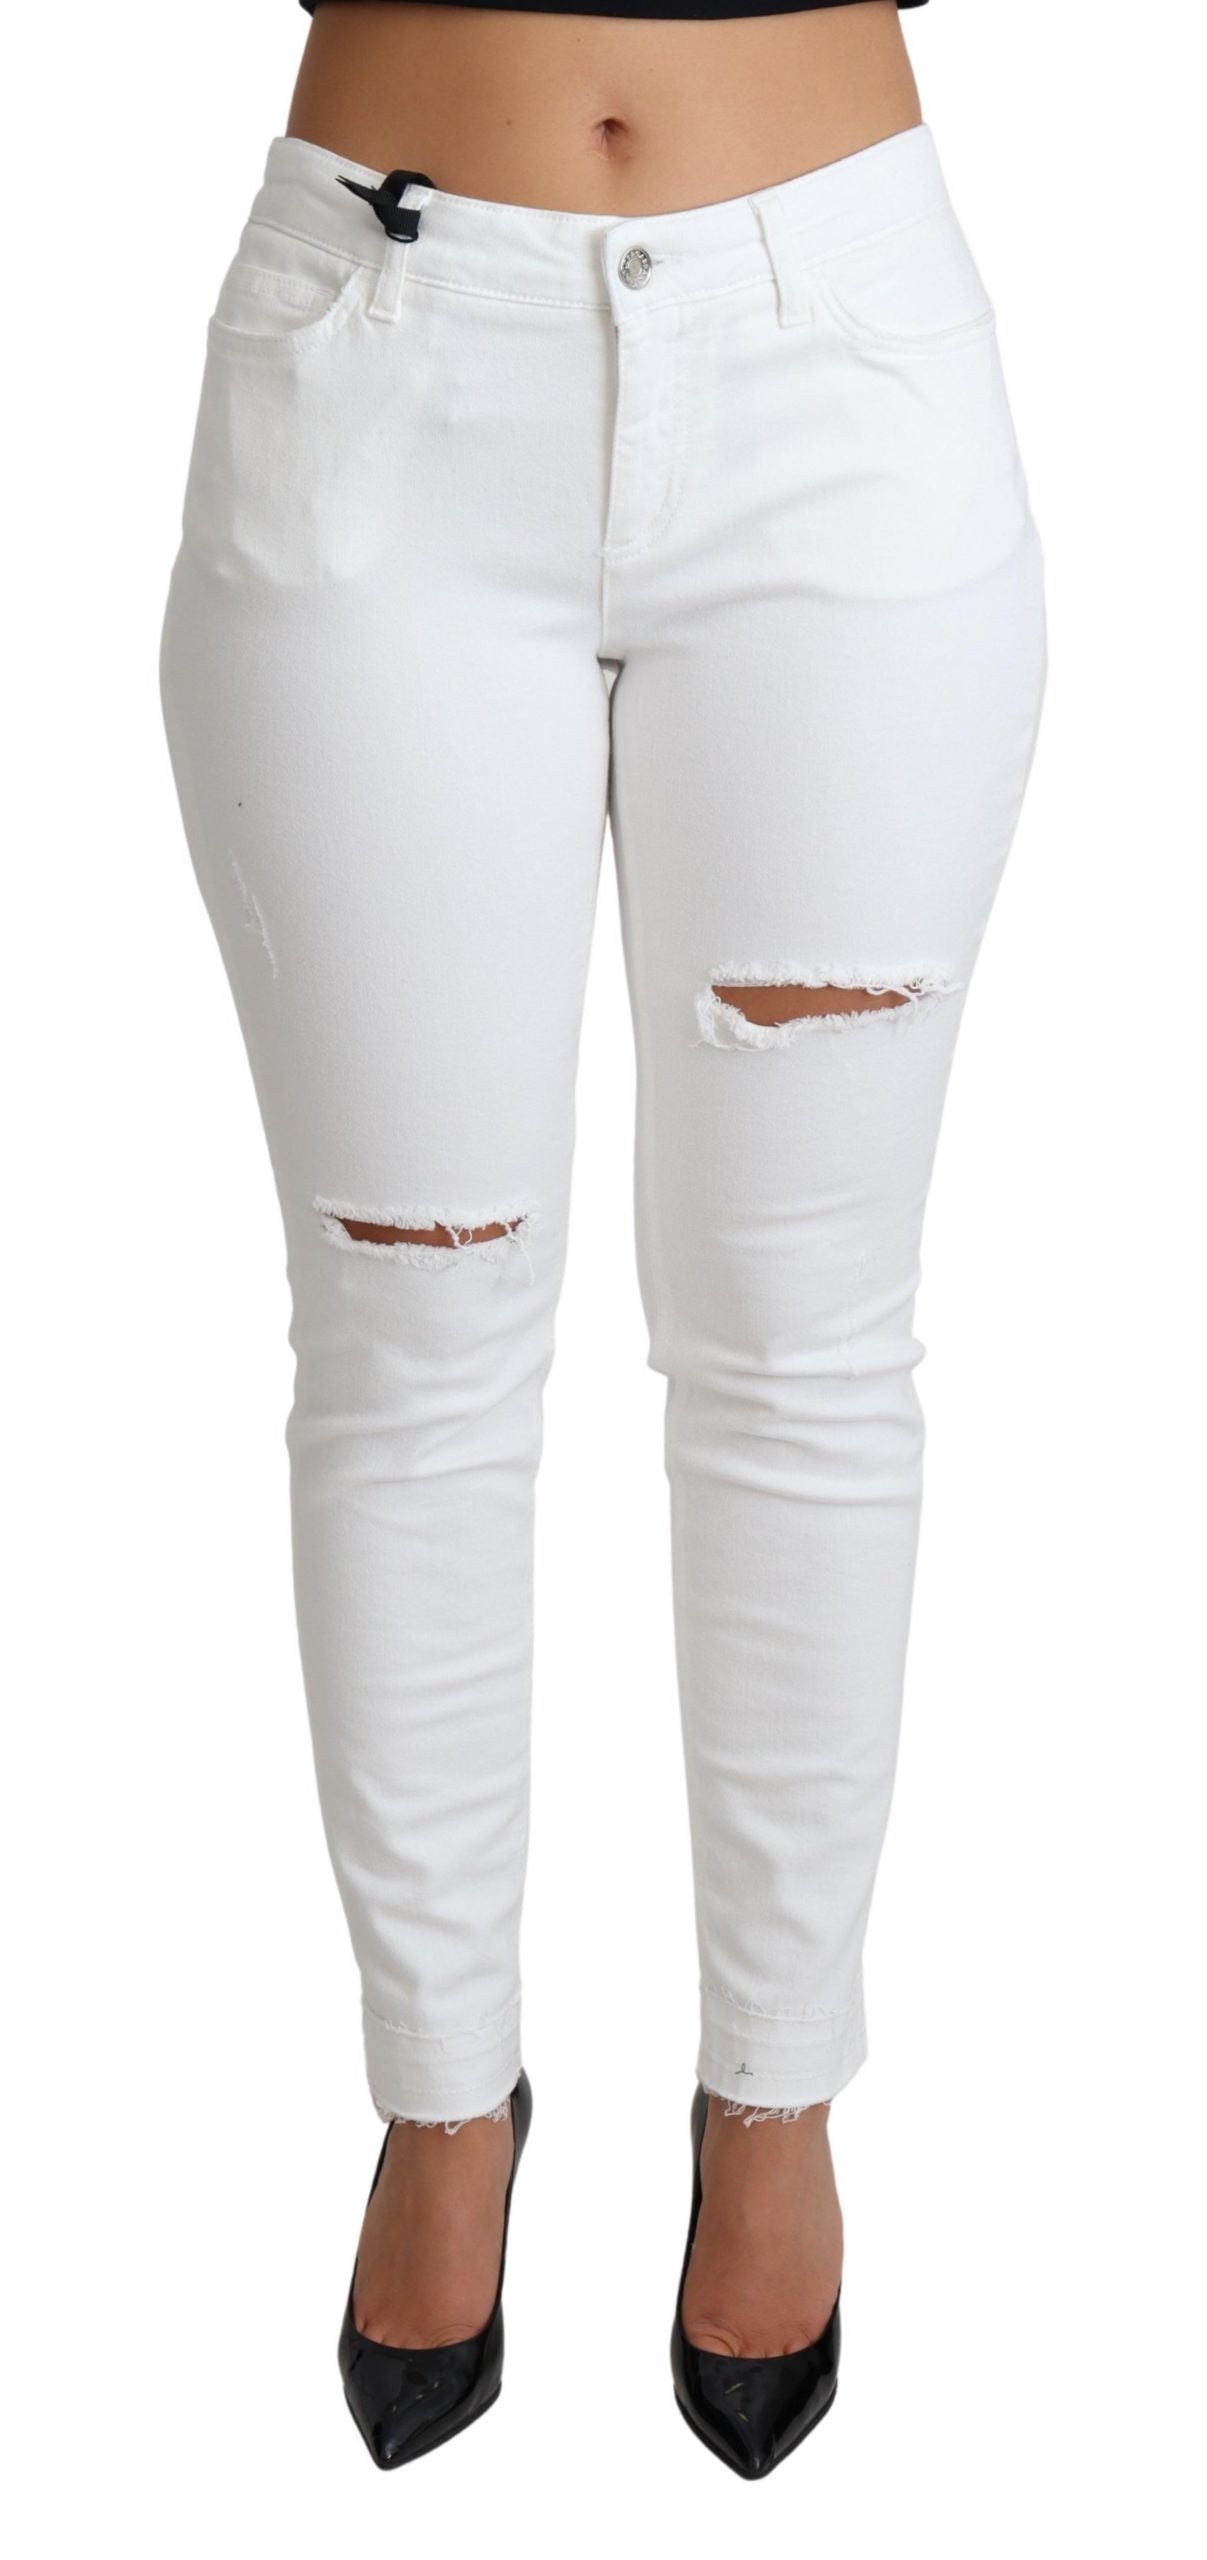 Chic White Mid Waist Designer Jeans